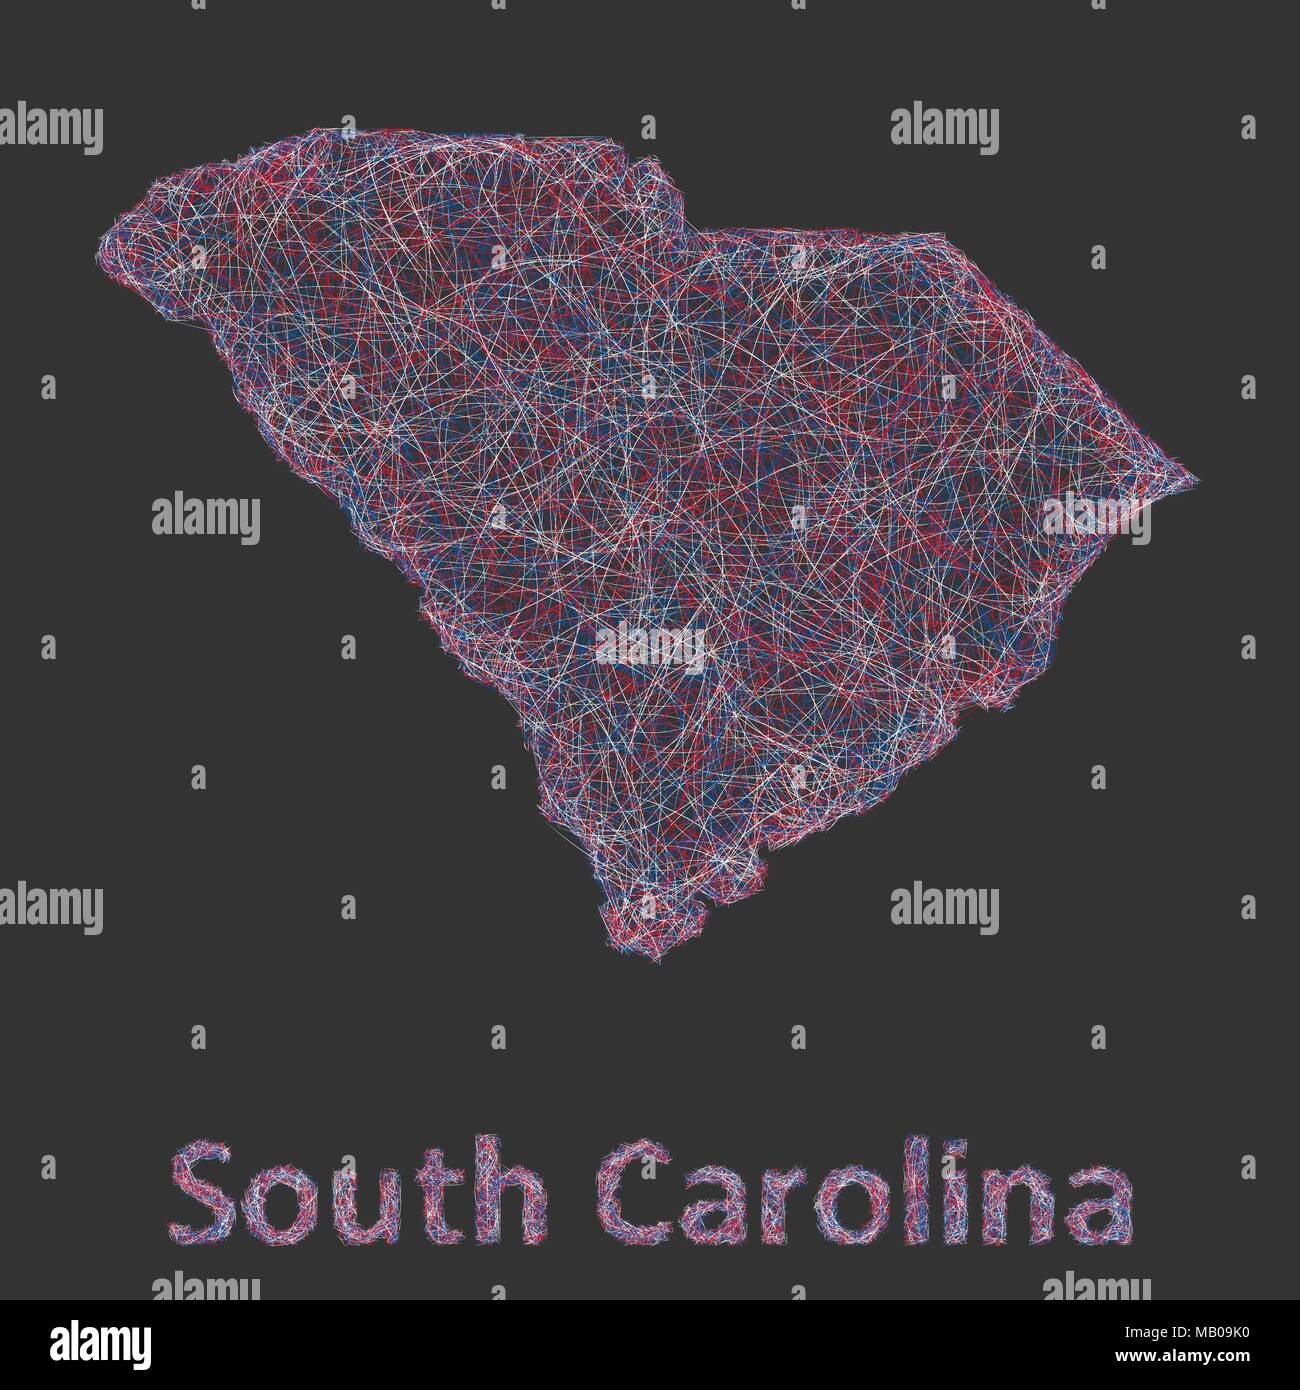 South Carolina Linie Art Karte Stock Vektor